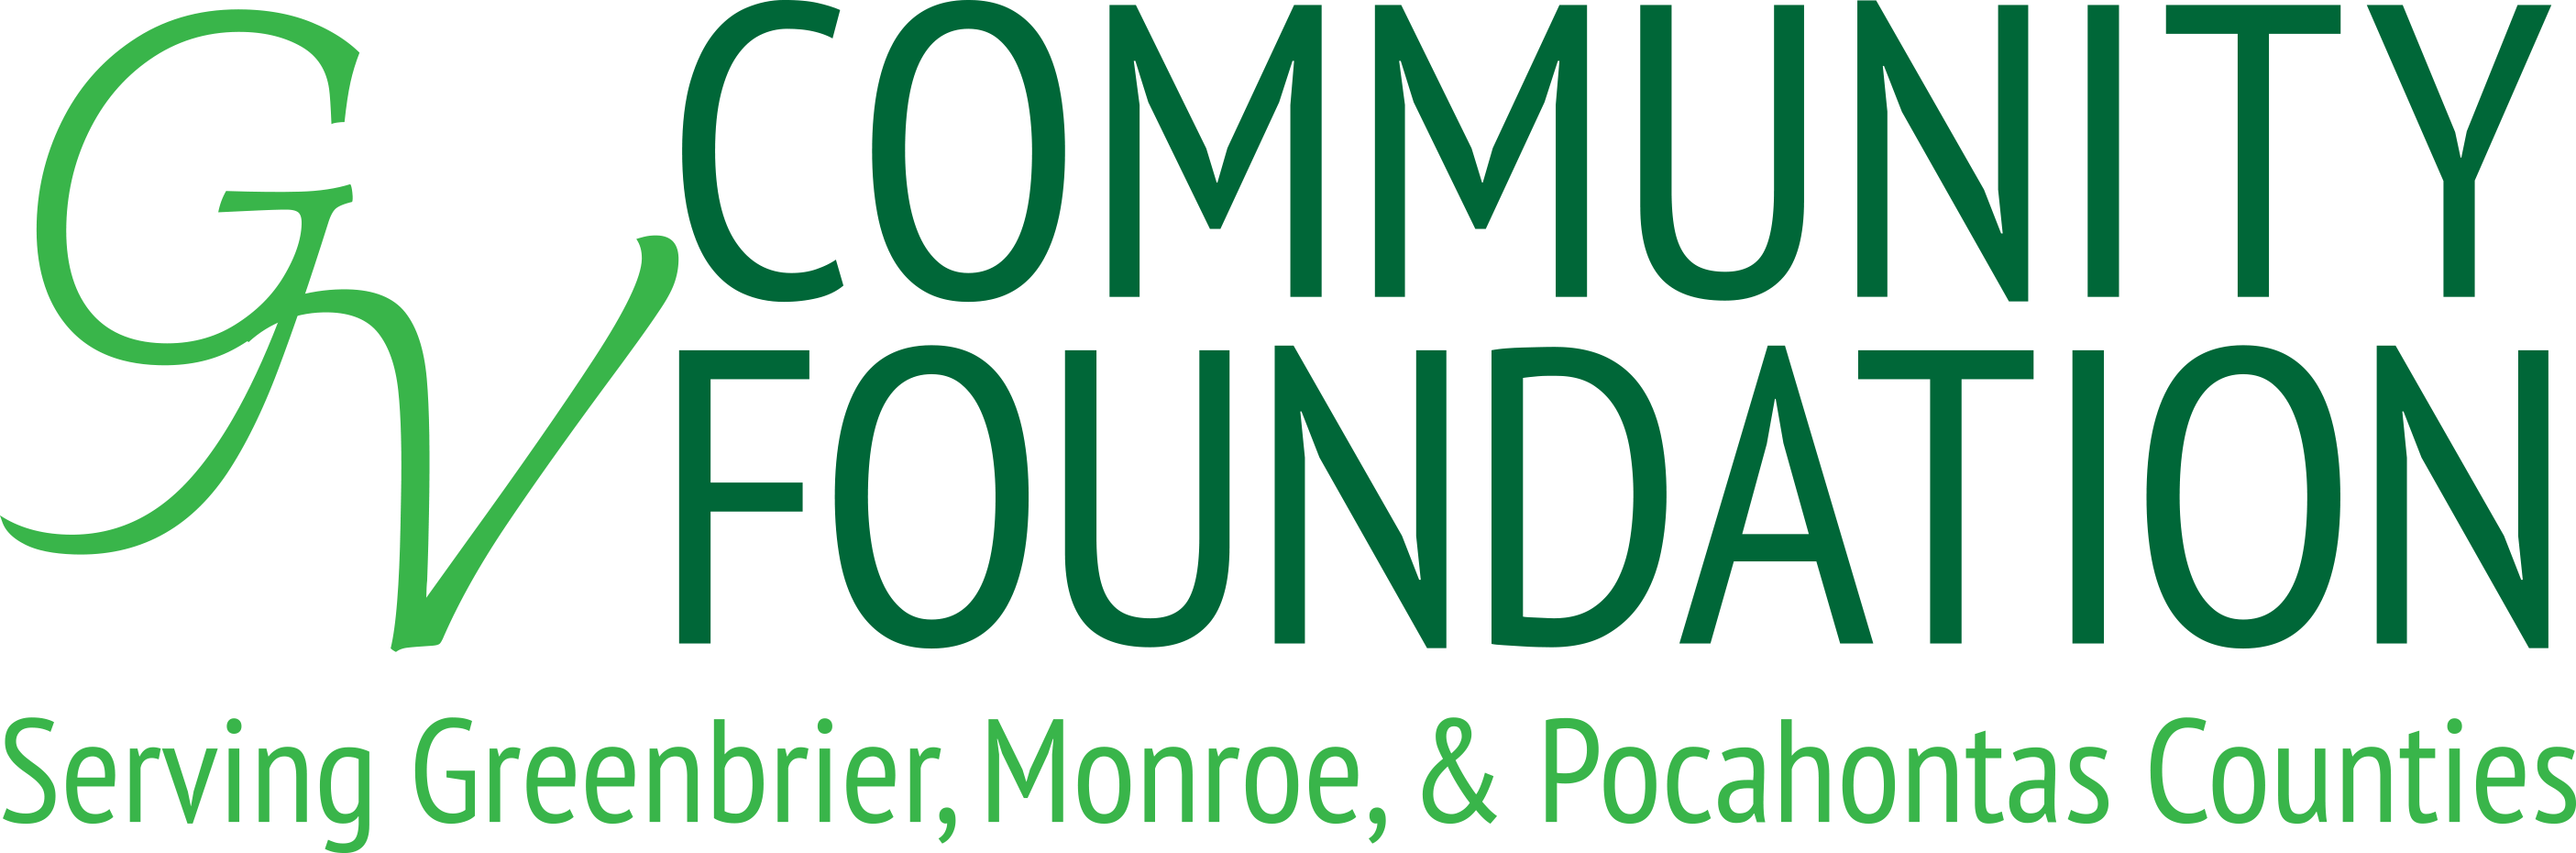 Logo_GV Community Foundation_2